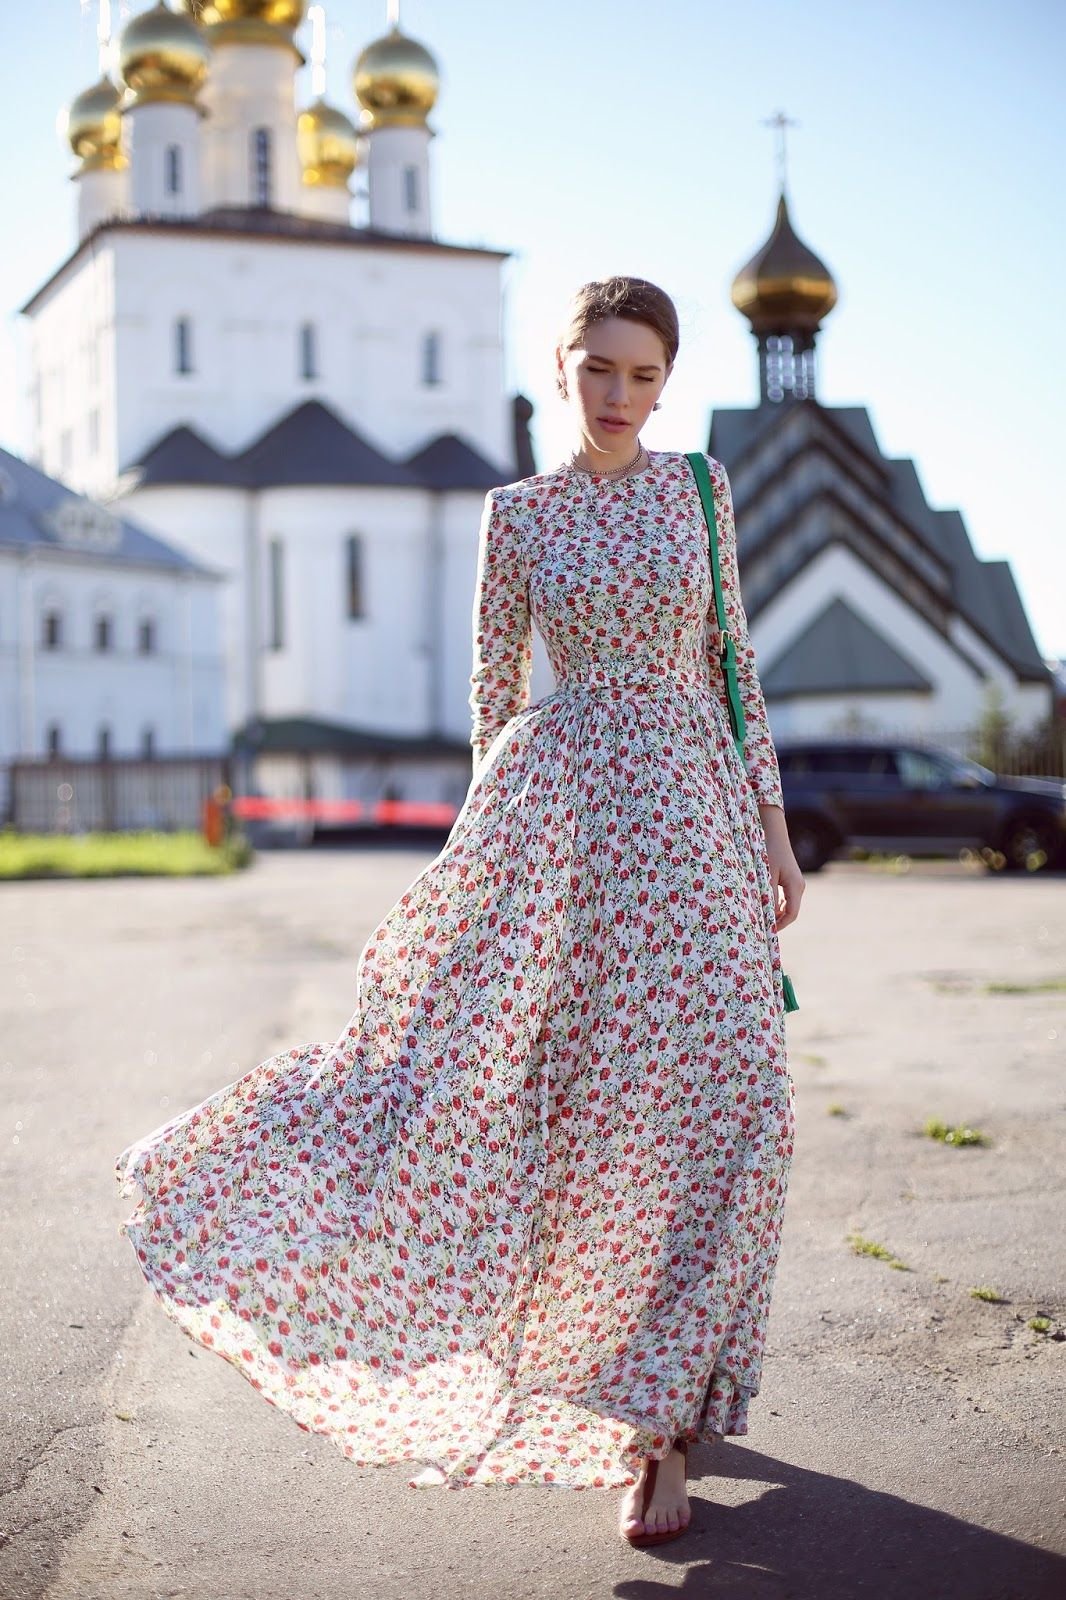 Православные платья интернет